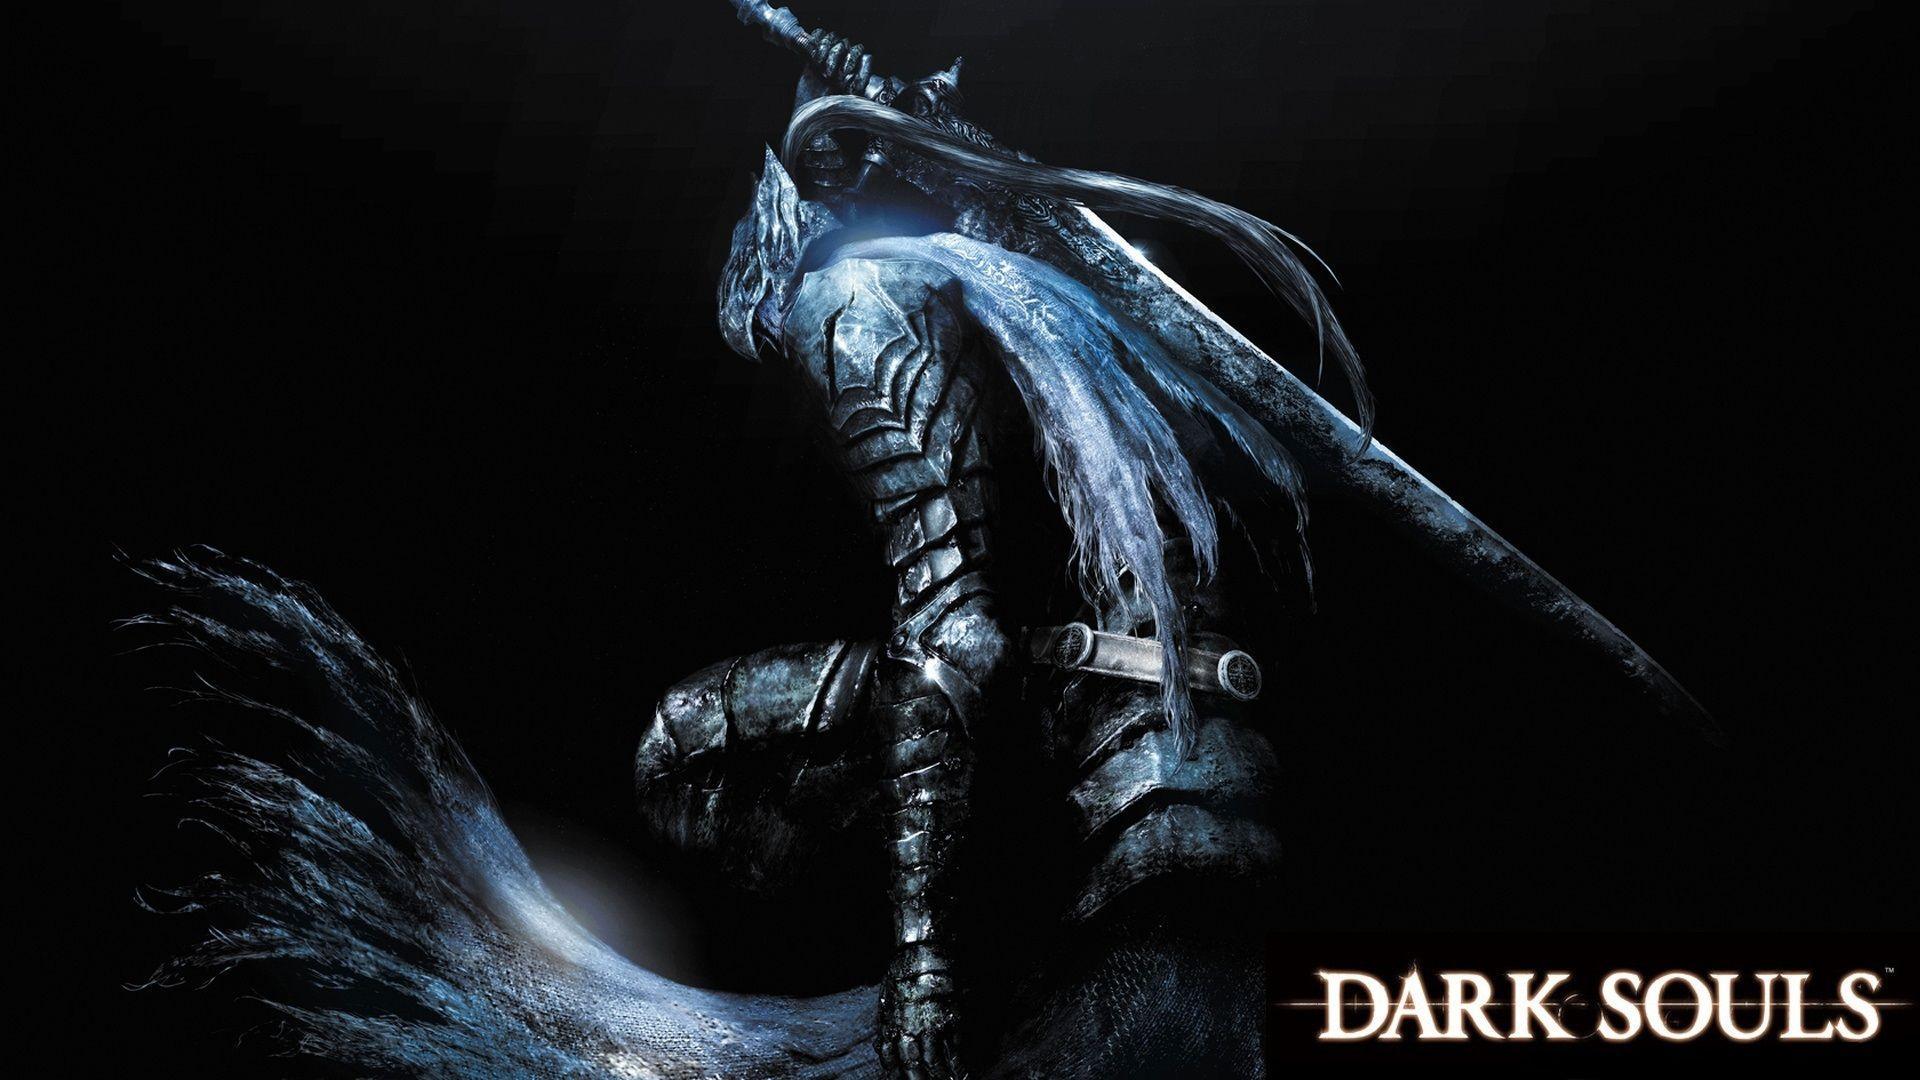 Dark Souls 2 Wallpaper Hd. Dark Souls Wiki